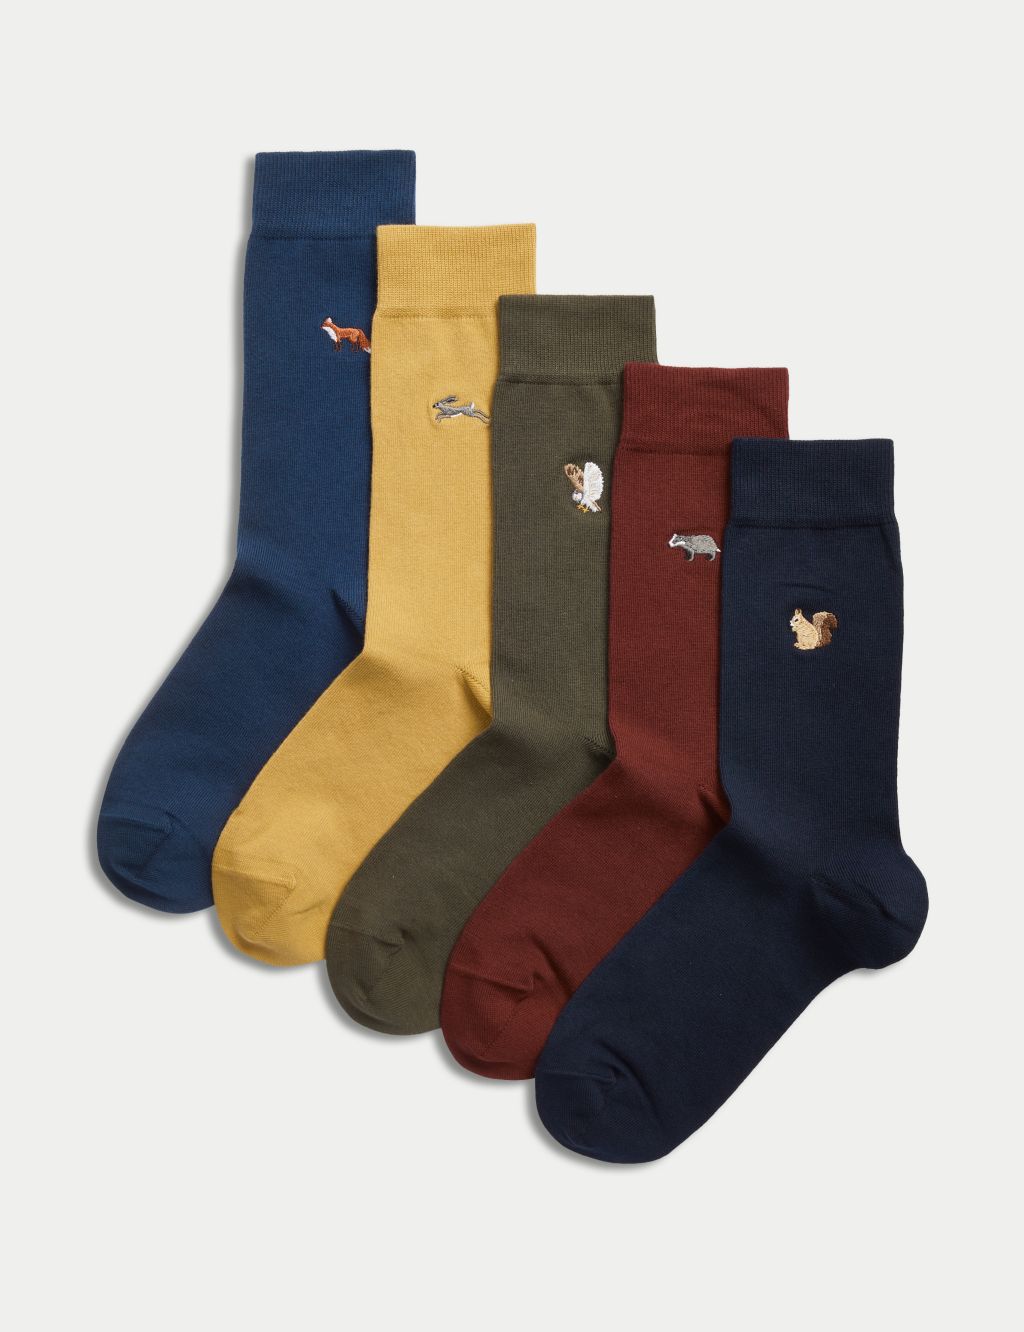 5pk Cool & Fresh™ Cotton Rich Socks